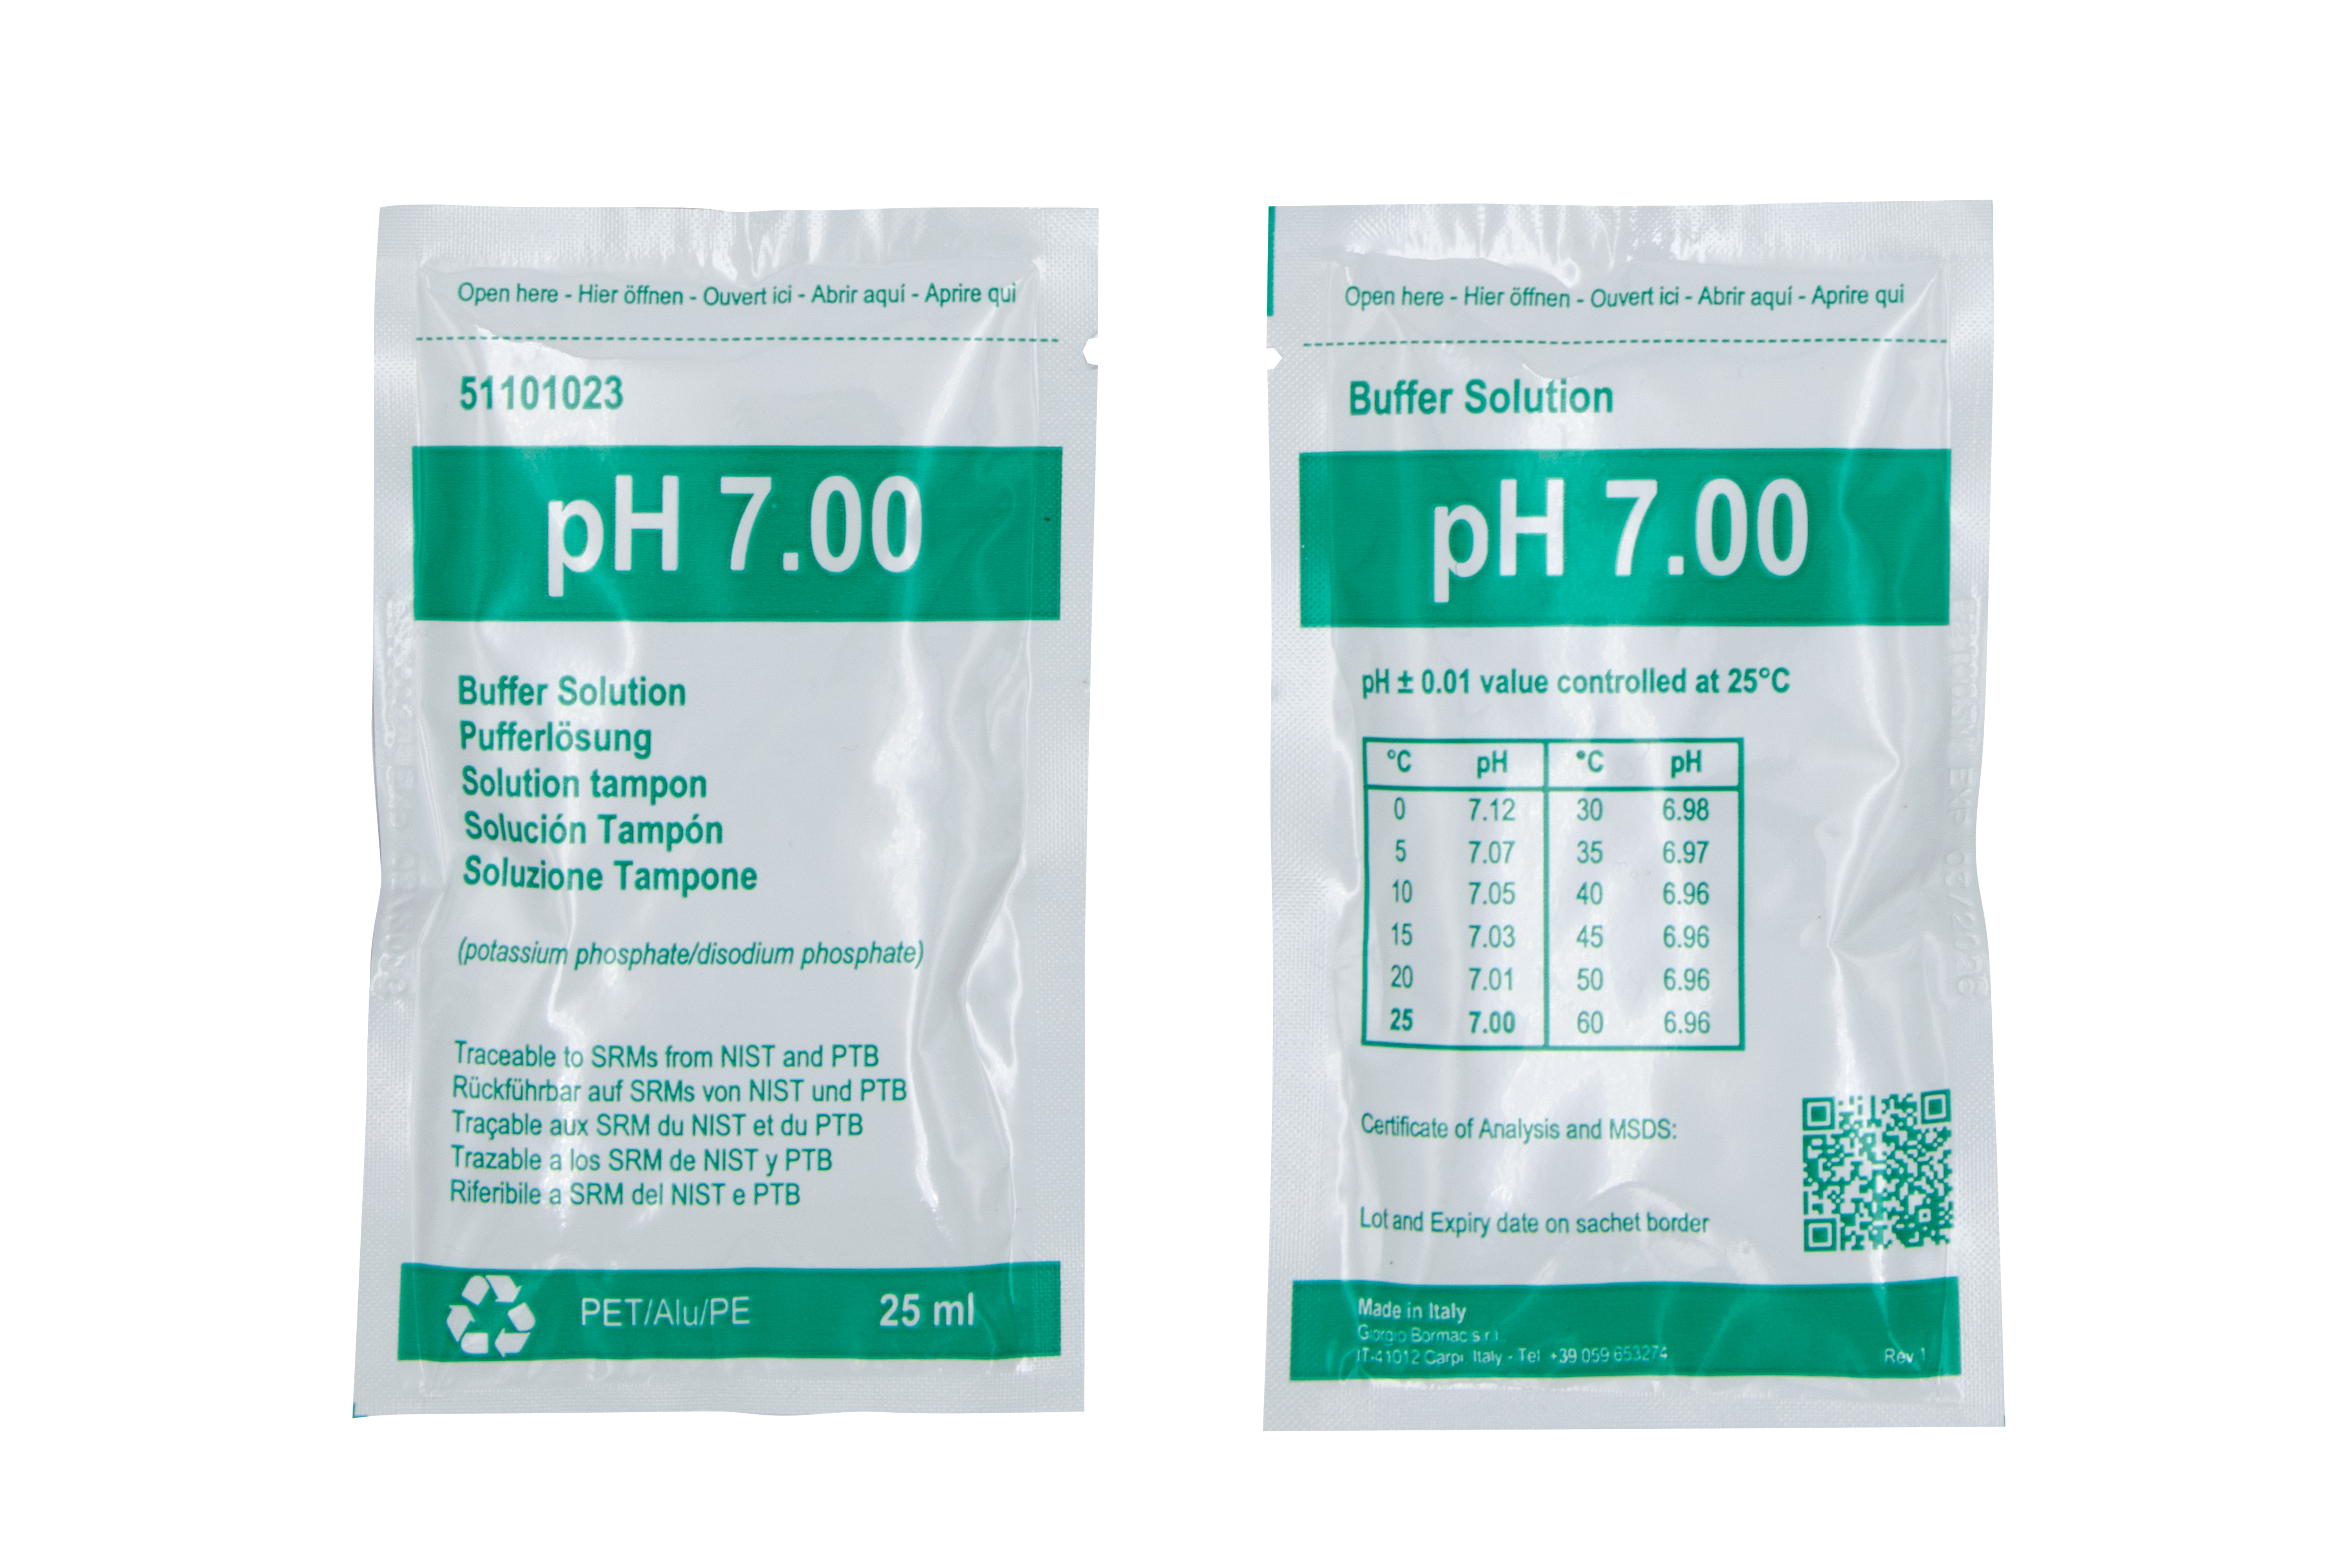 XS BASIC pH 7.00 (25°C) Pufferlösungspackung mit 20 Tüten à 25ml, grün, mit Analysenzertifikat